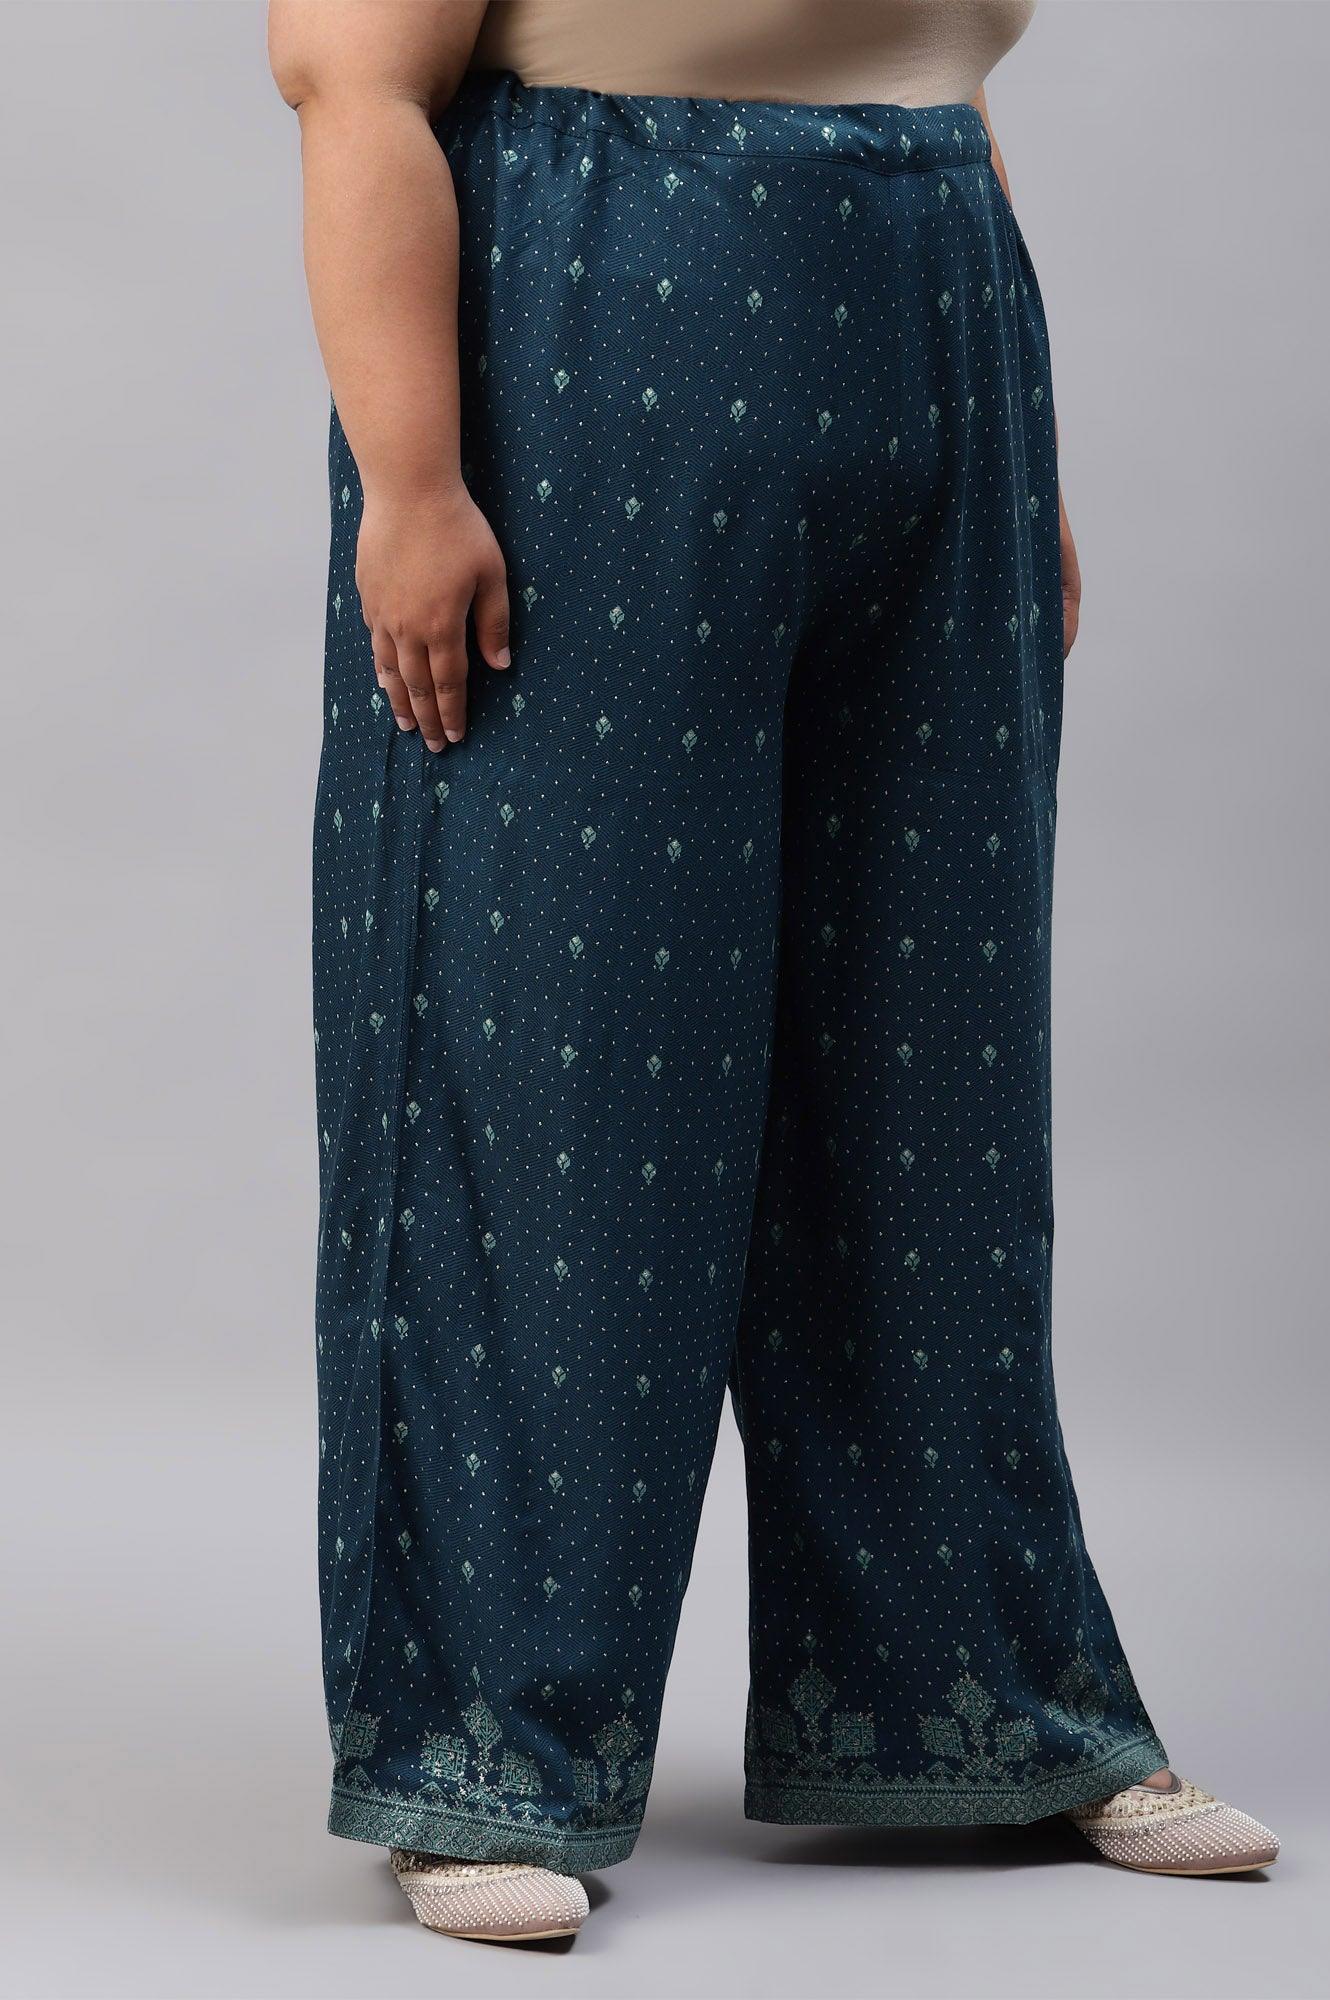 Plus Size Dark Blue Rayon Printed Parallel Pants - wforwoman